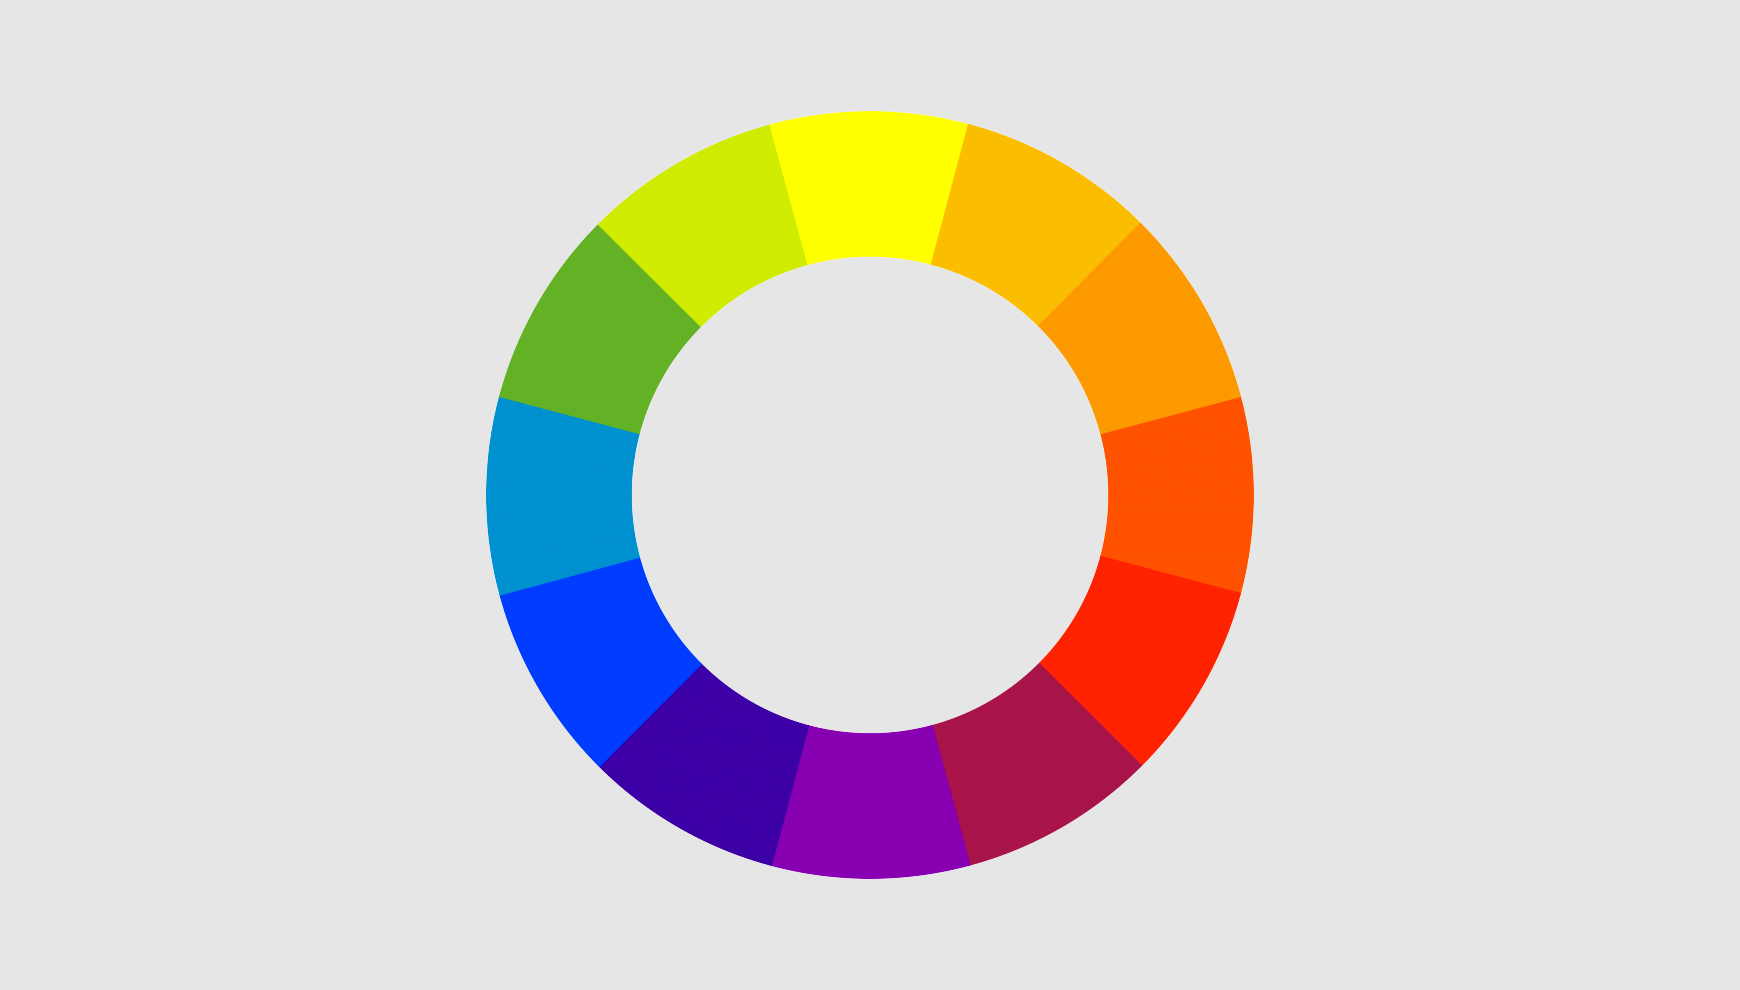 下一步是了解如何选择实际颜色设计师通常依靠色轮来解决这个问题